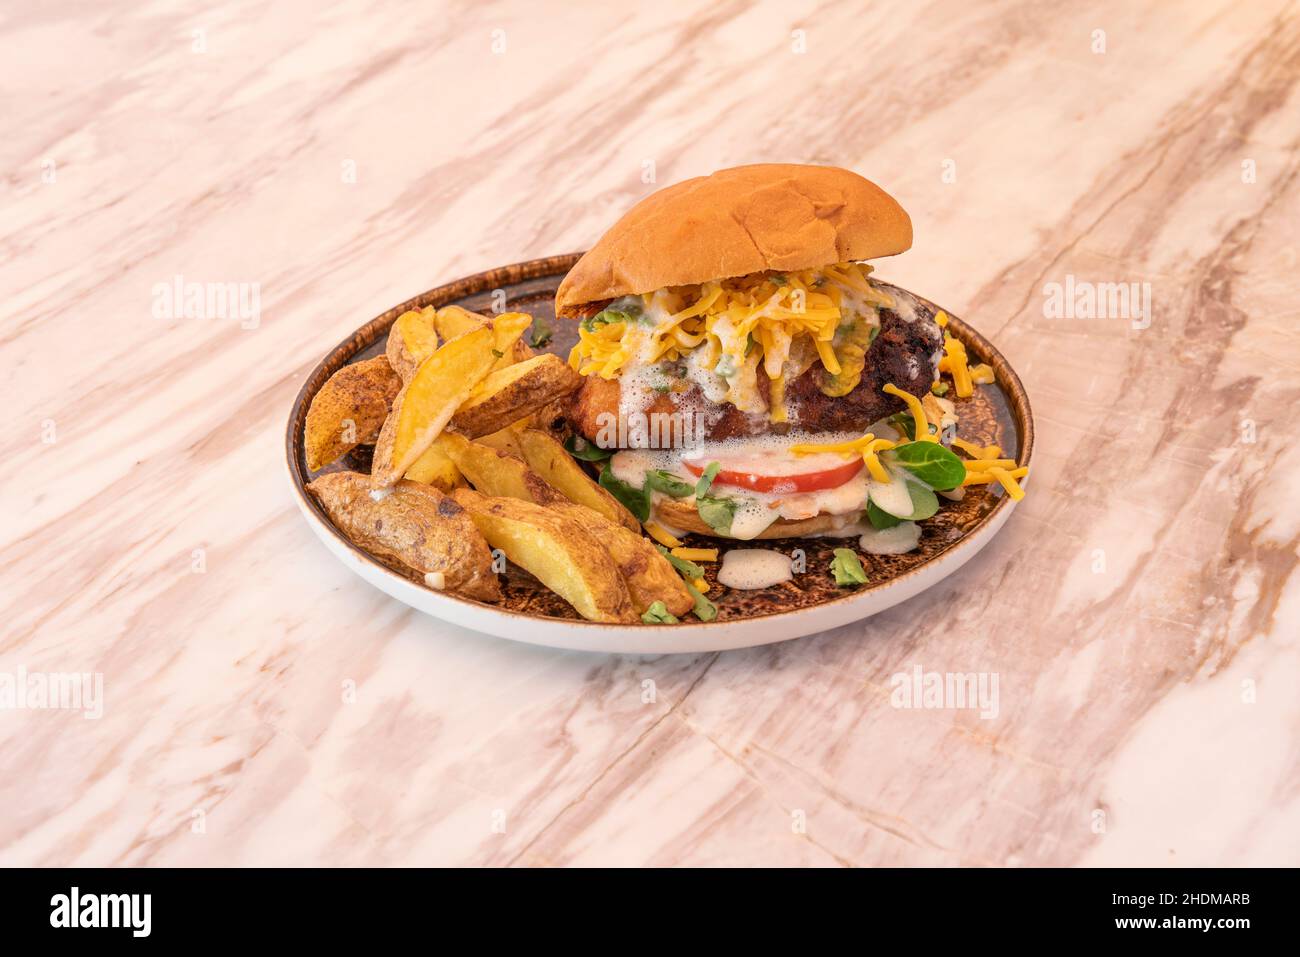 Un hamburger è un sandwich di carne macinata o di origine vegetale, agglutinato sotto forma di bistecca cotta alla griglia o alla griglia, anche Foto Stock